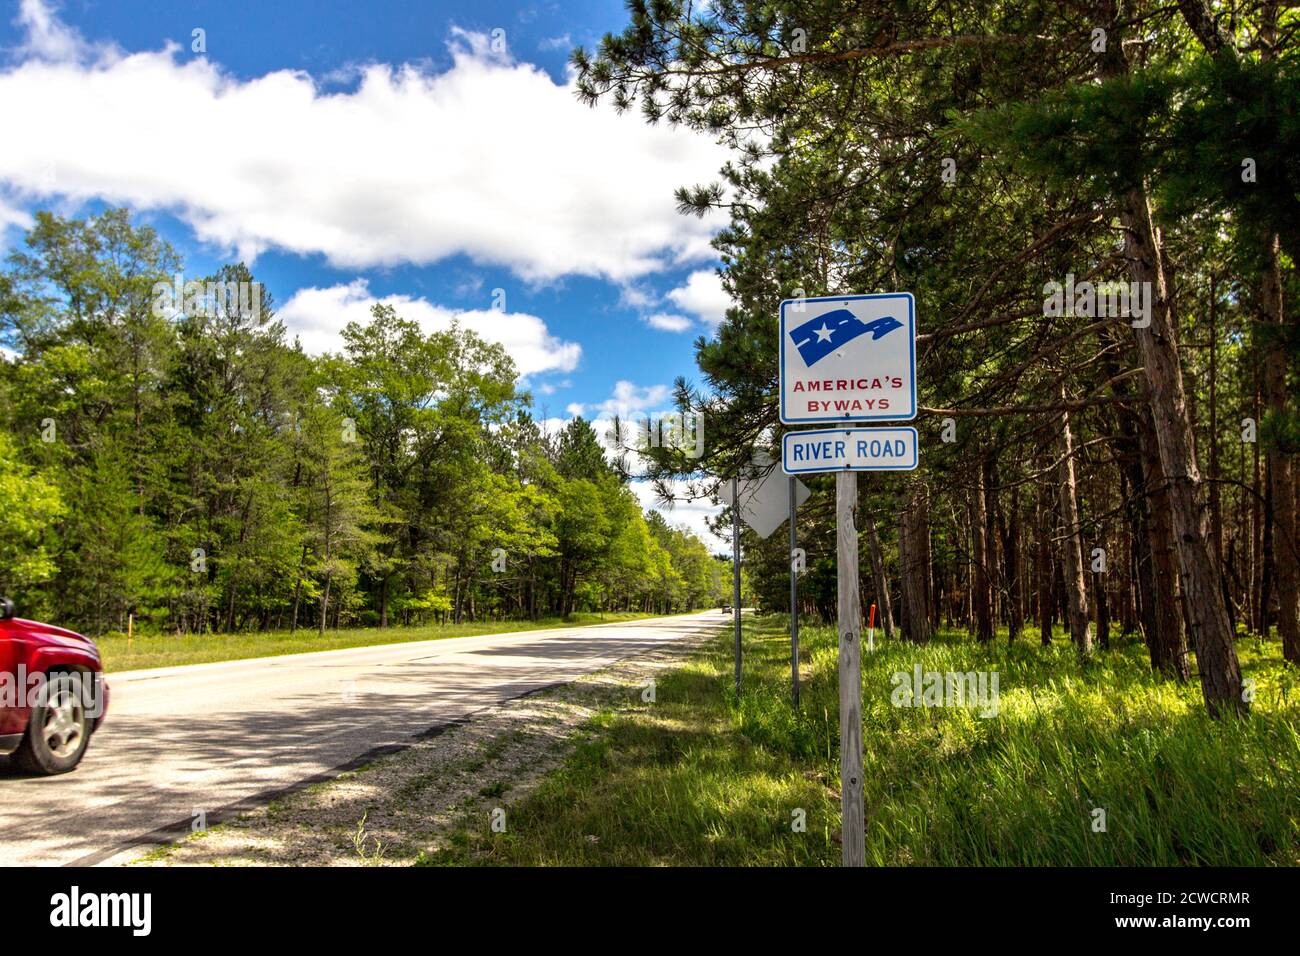 Cartello per la strada panoramica River Road nella foresta nazionale di Huron Manistee. La strada panoramica si snoda attraverso la foresta del Michigan settentrionale. Foto Stock